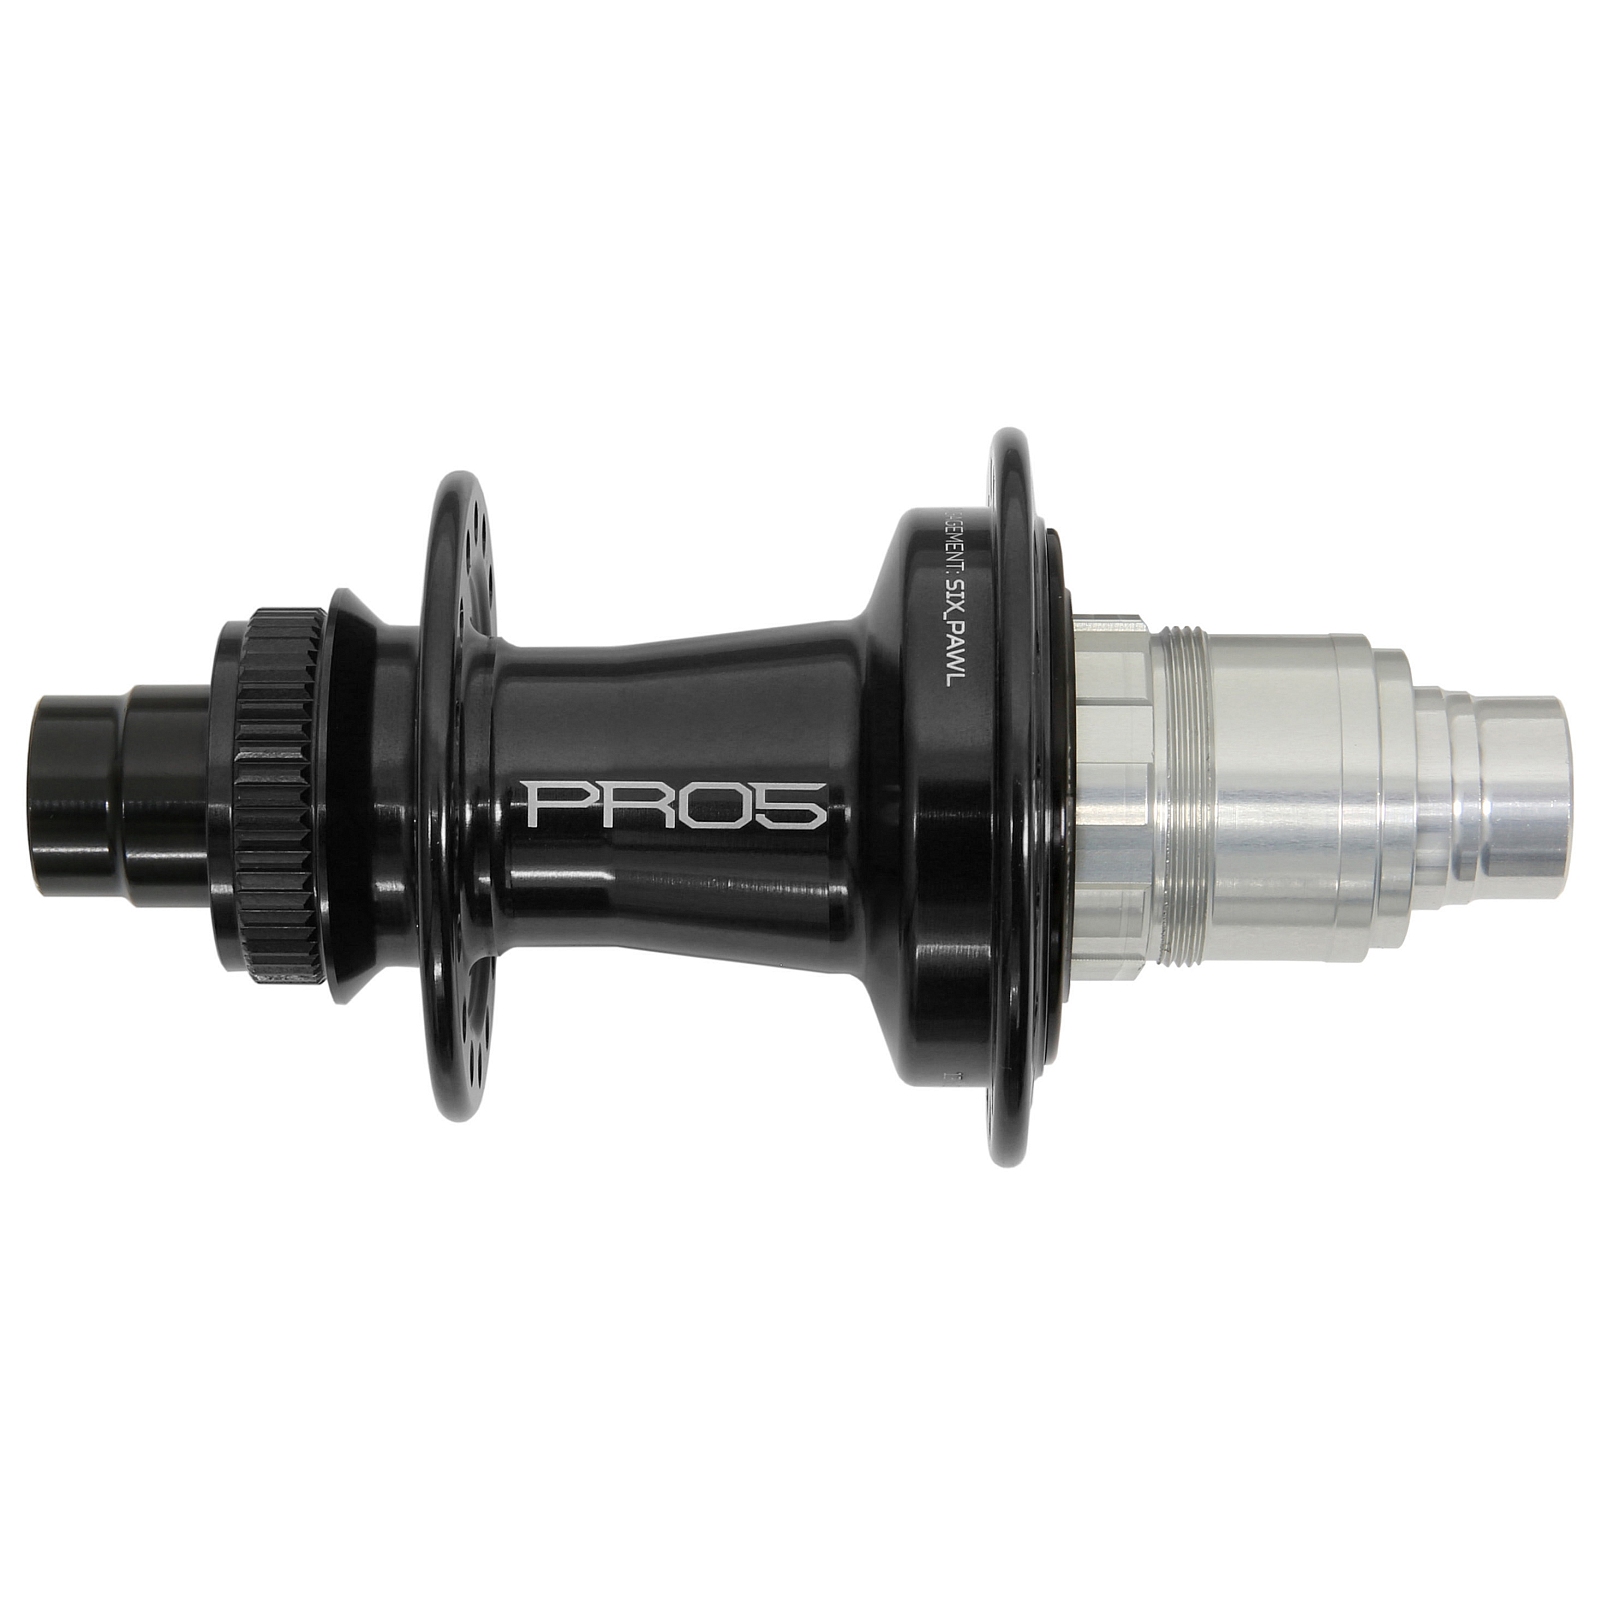 Productfoto van Hope Pro 5 Achterwielnaaf - Centerlock - 12x142mm | SRAM XDR - zwart